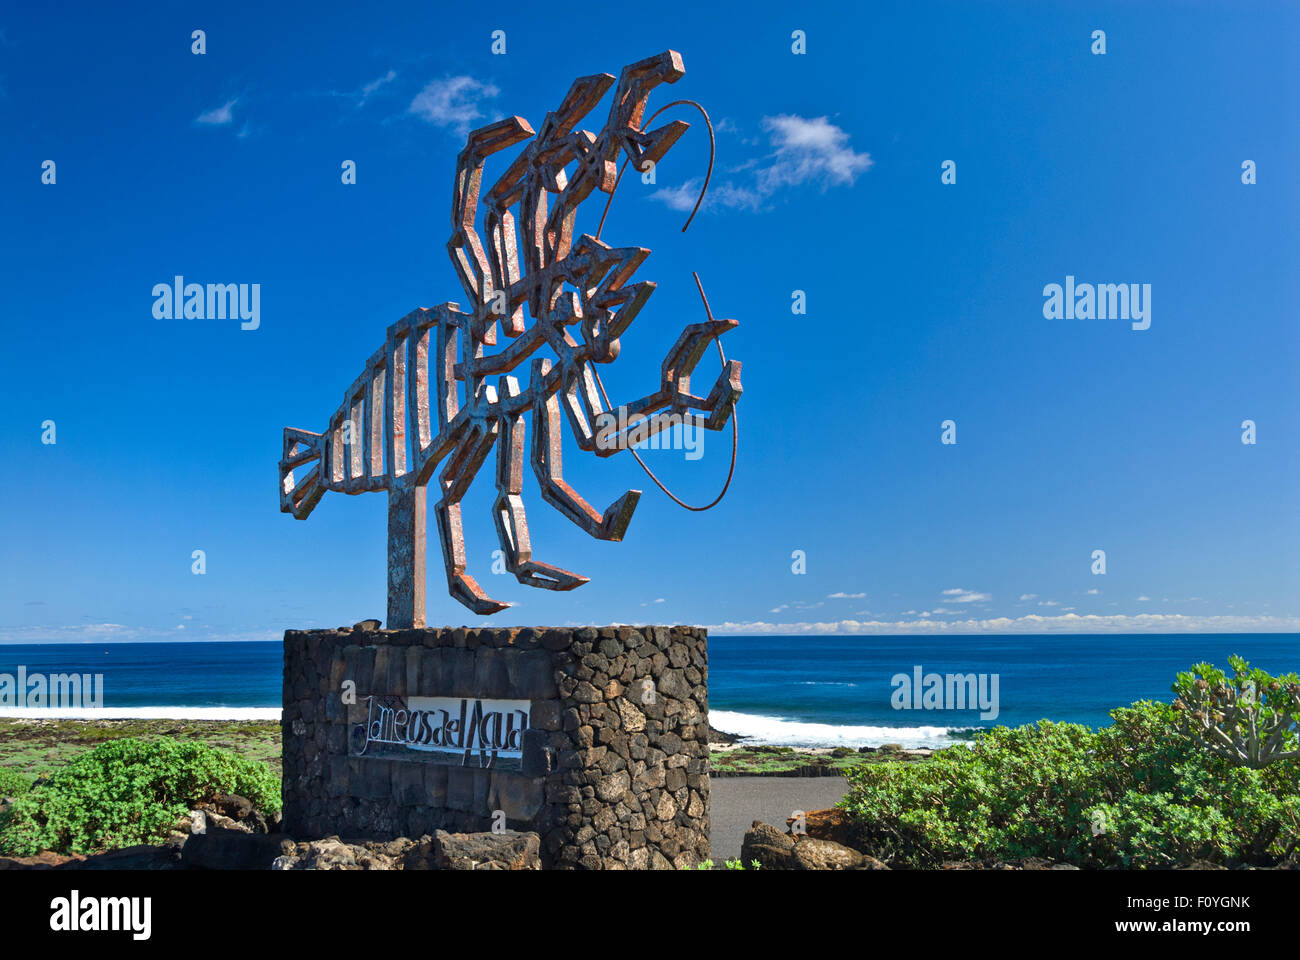 JAMEOS DEL AGUA de la Sculpture d'un crabe conçu par Cezar Manrique à l'entrée de Jameos del Agua, Lanzarote Iles Canaries Espagne Banque D'Images